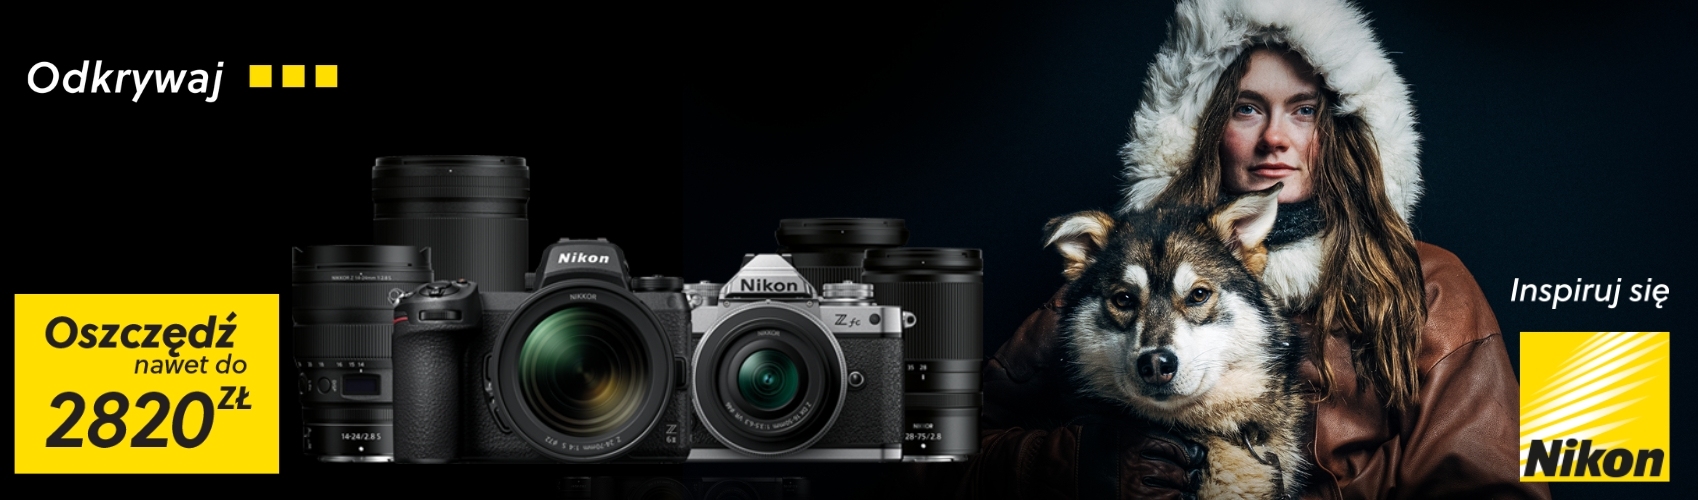 Nadszedł czas oszczędności! Teraz z Nikonem możesz ulepszyć swój sprzęt, kupując w super atrakcyjnej cenie! Sprawdź tutaj: